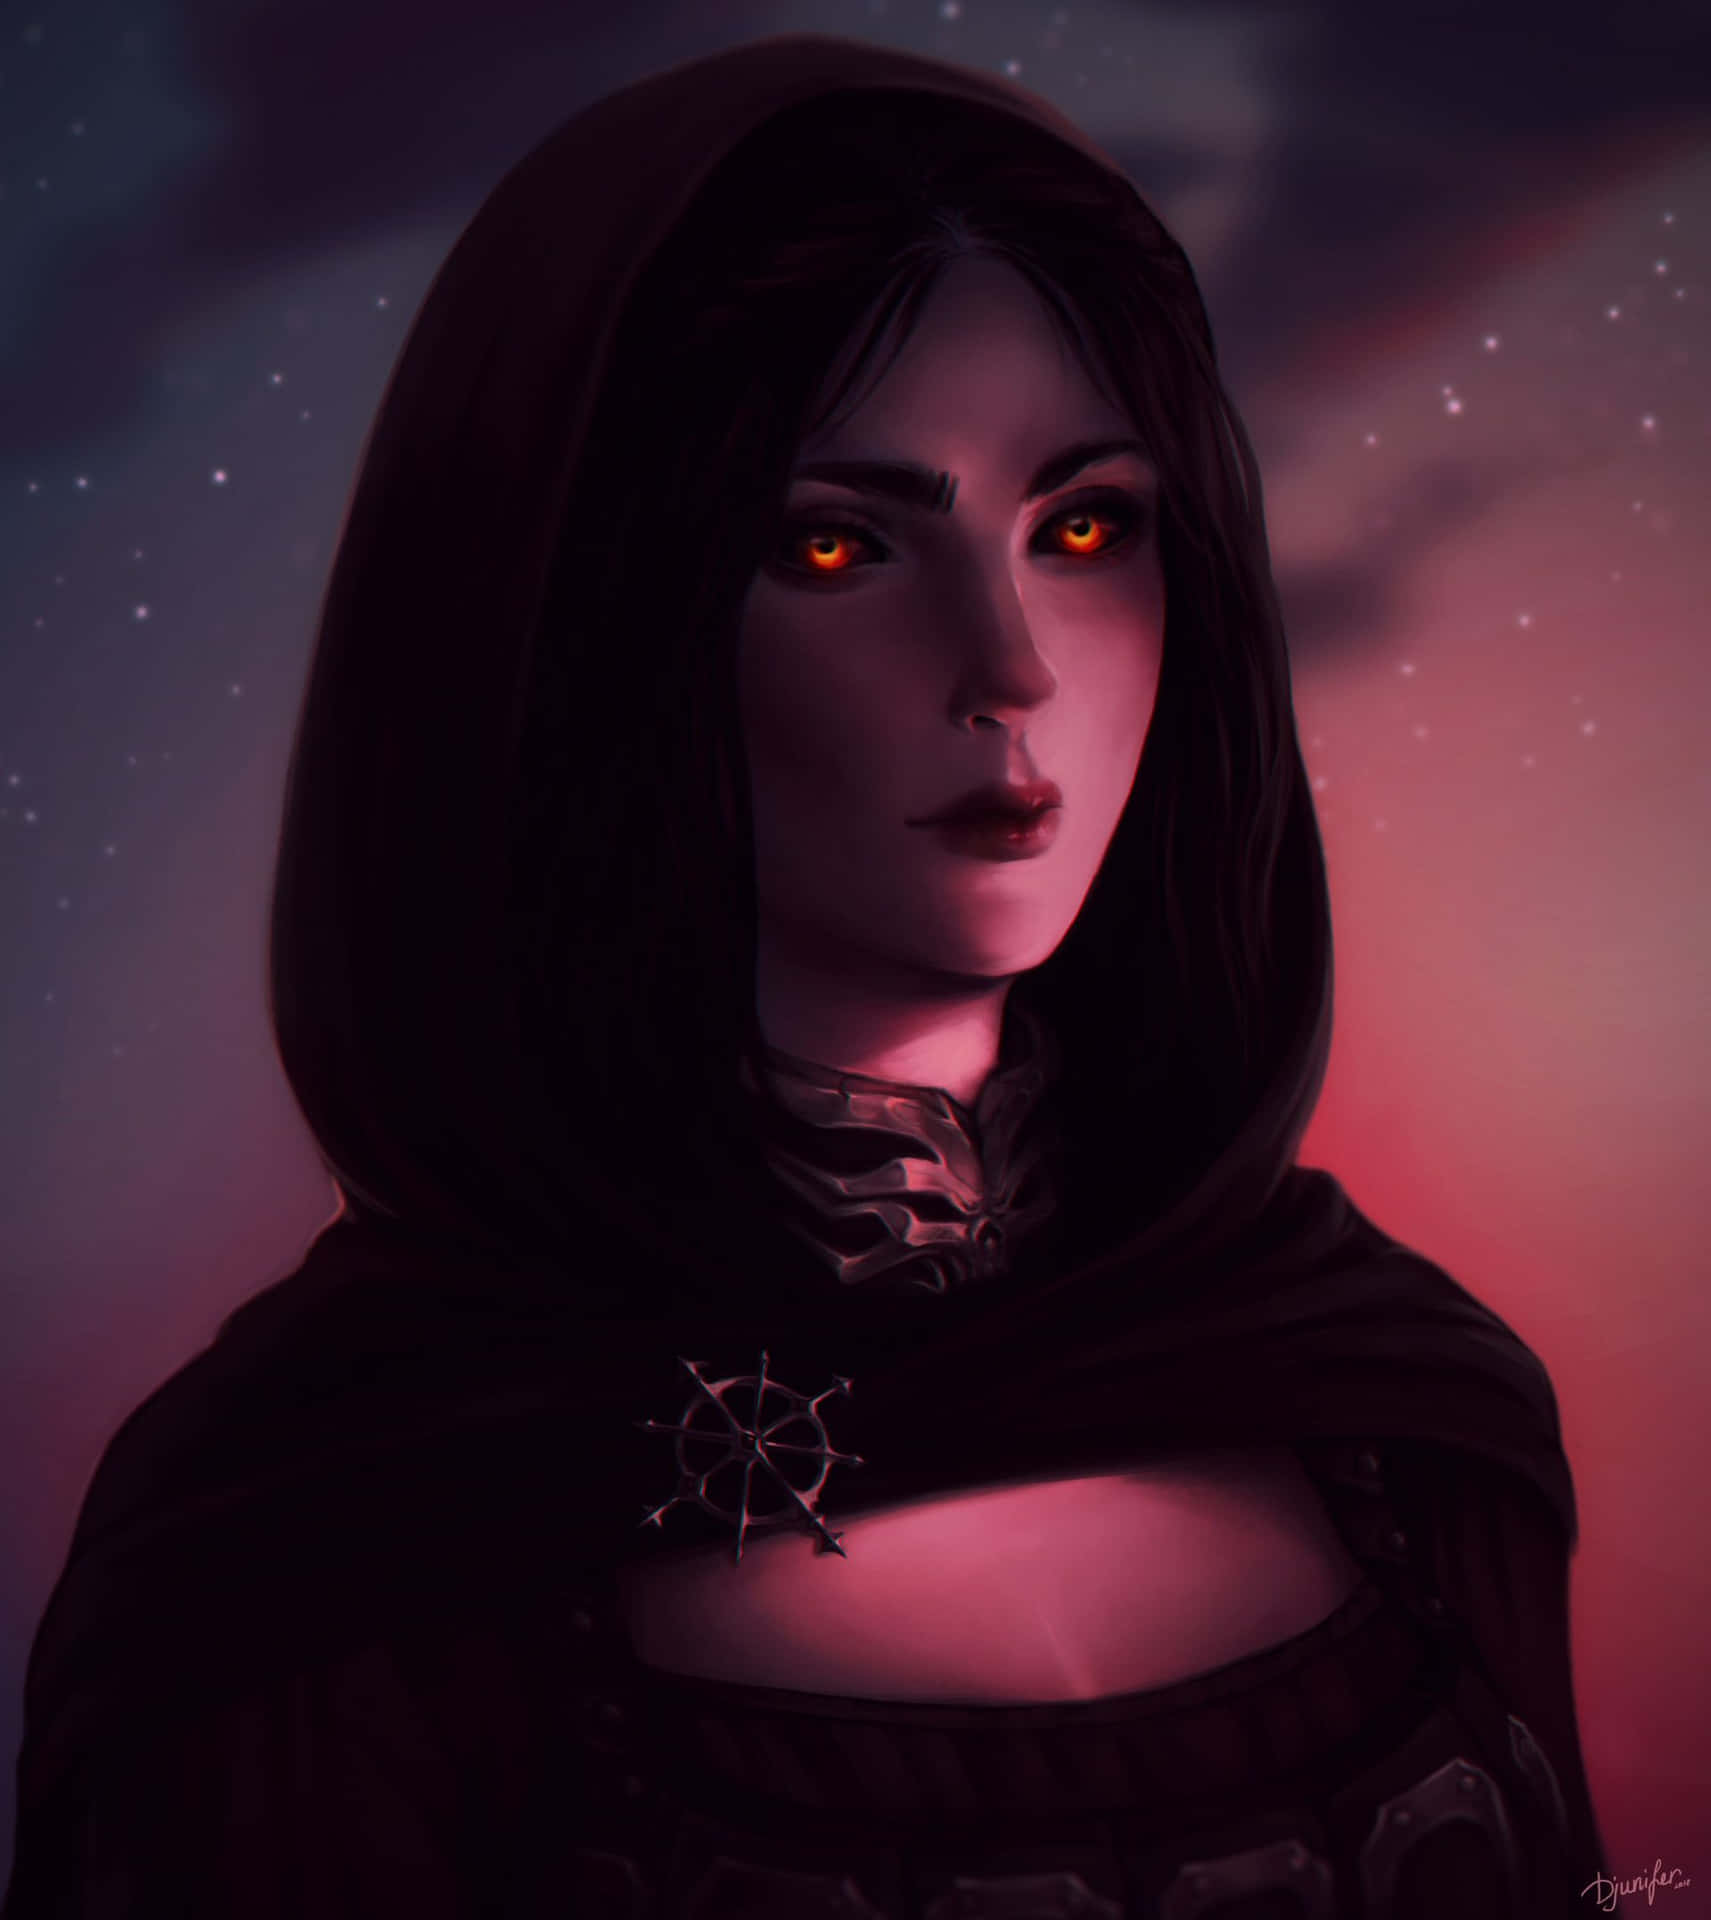 Serana, the Vampire Follower from Skyrim Wallpaper